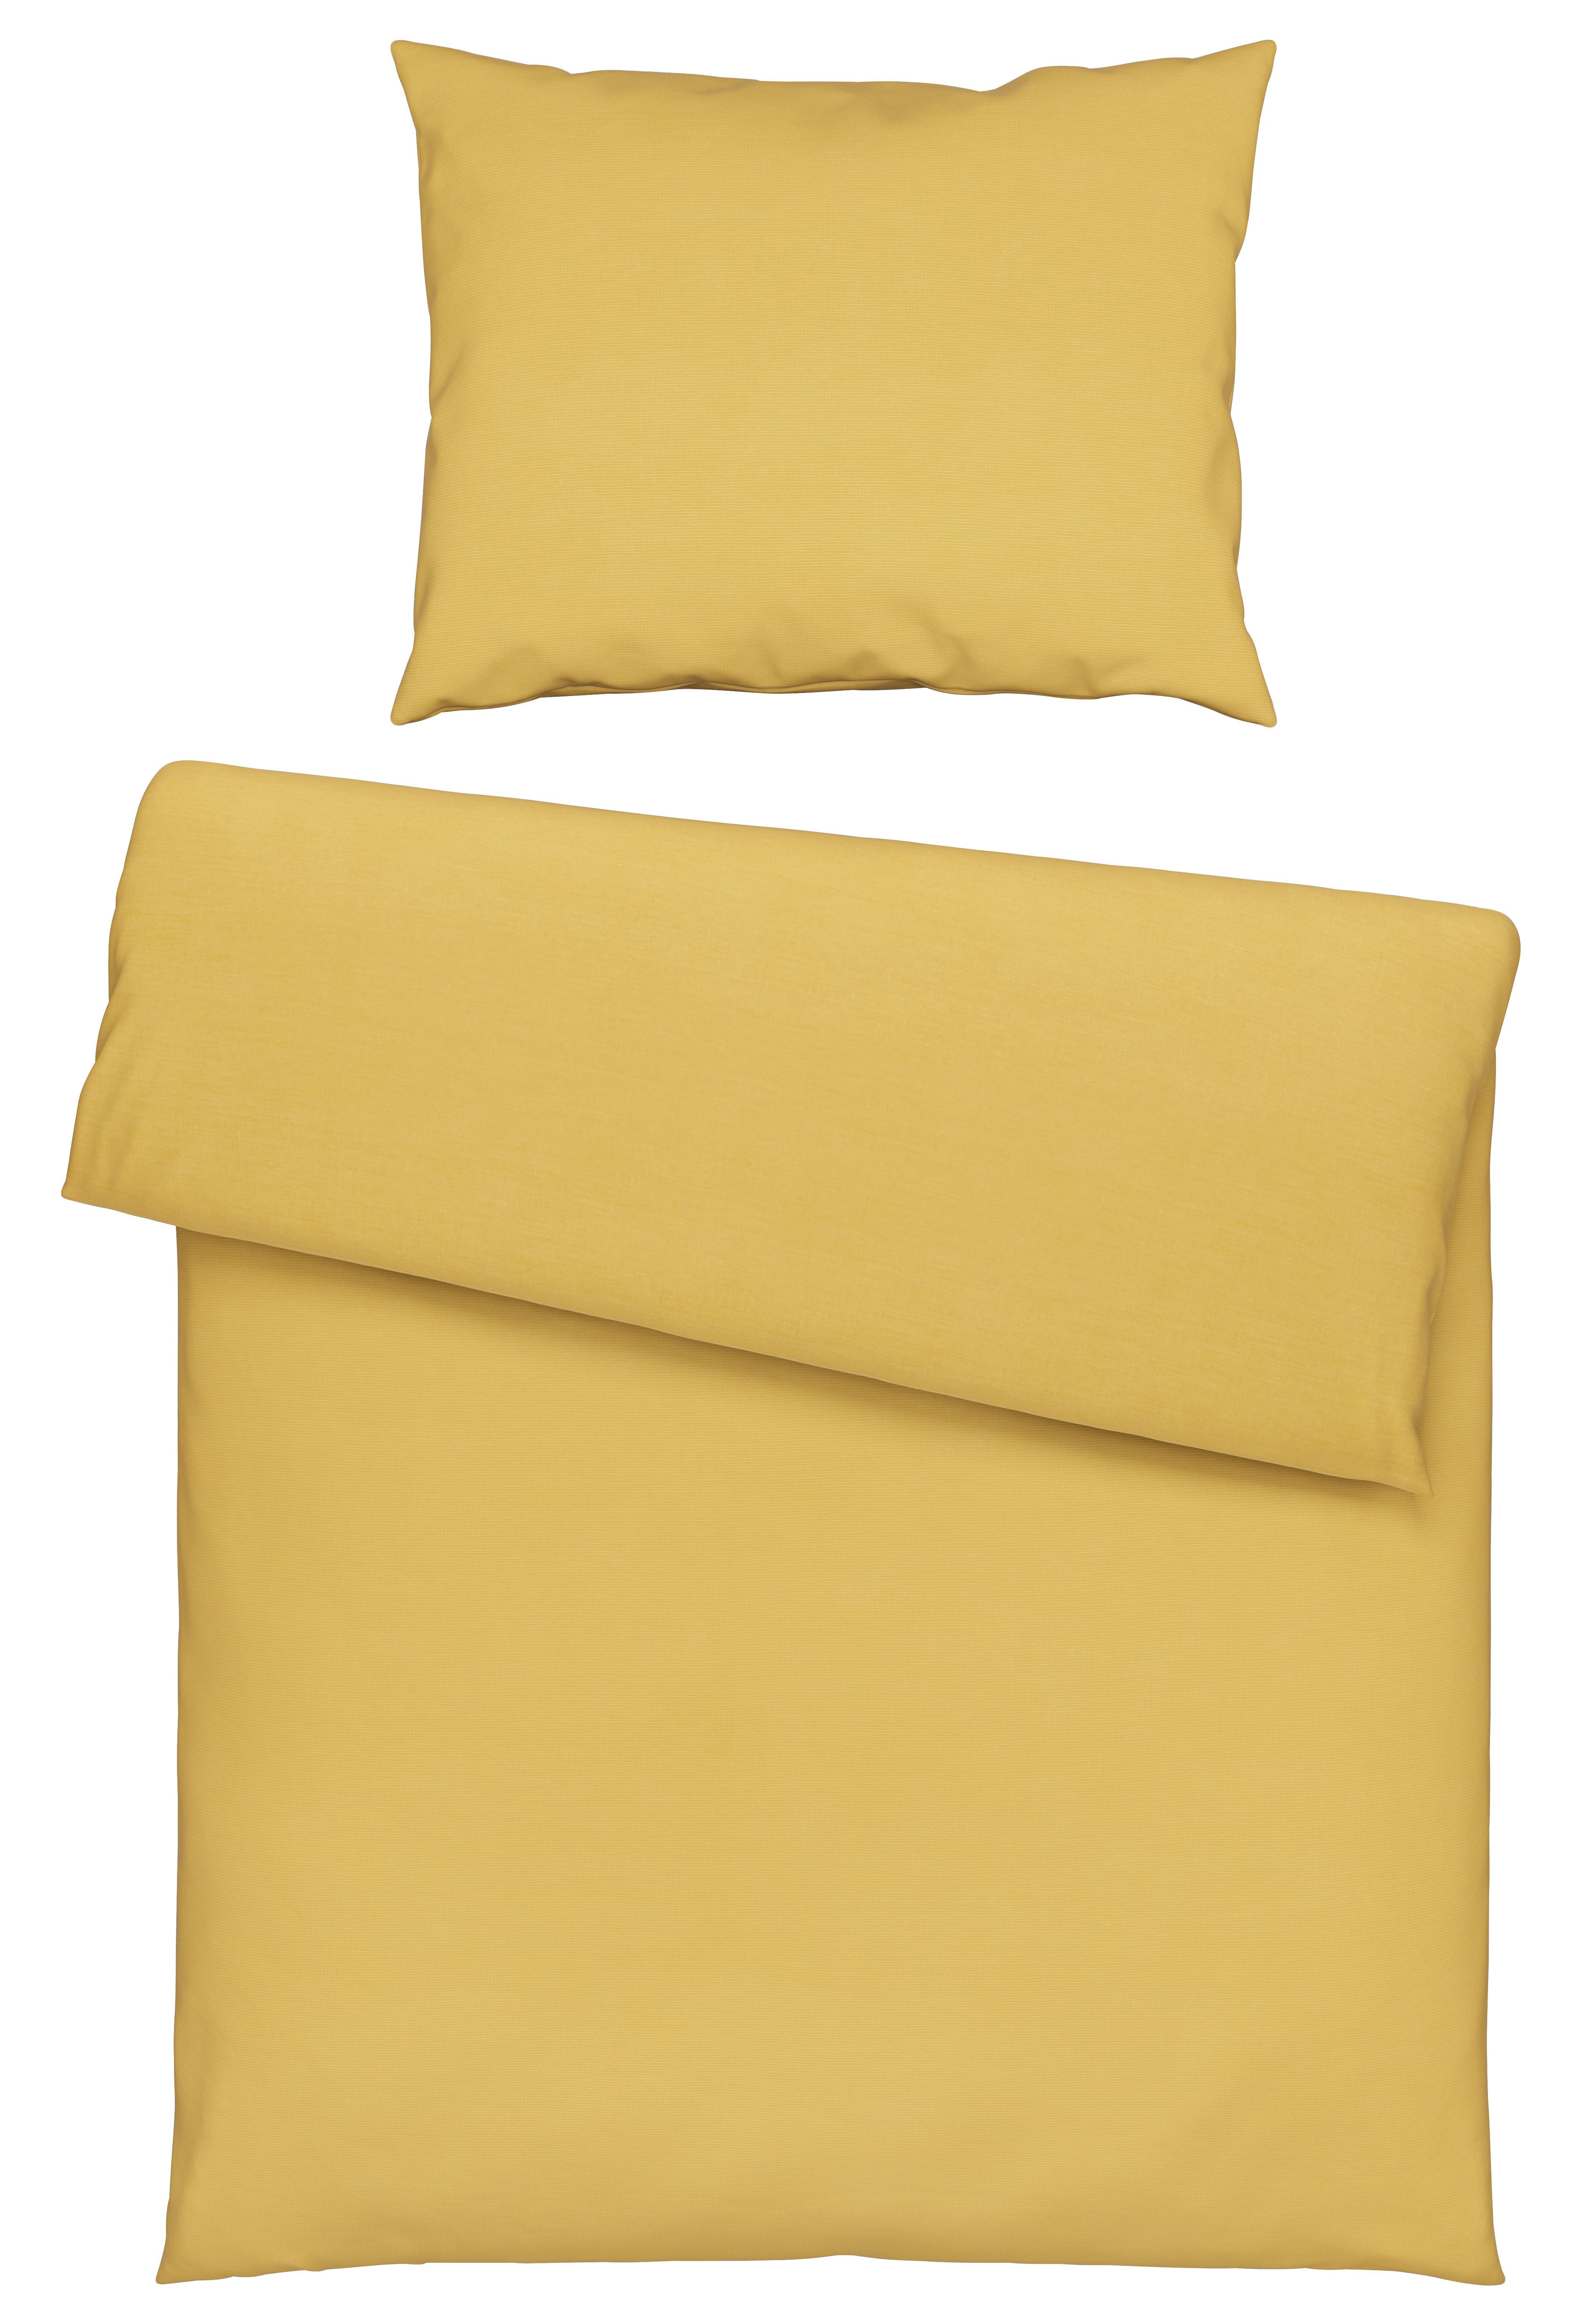 Posteľná Bielizeň Waffel, 140/200cm, Žltá - žltá, Moderný, textil (140/200cm) - Modern Living